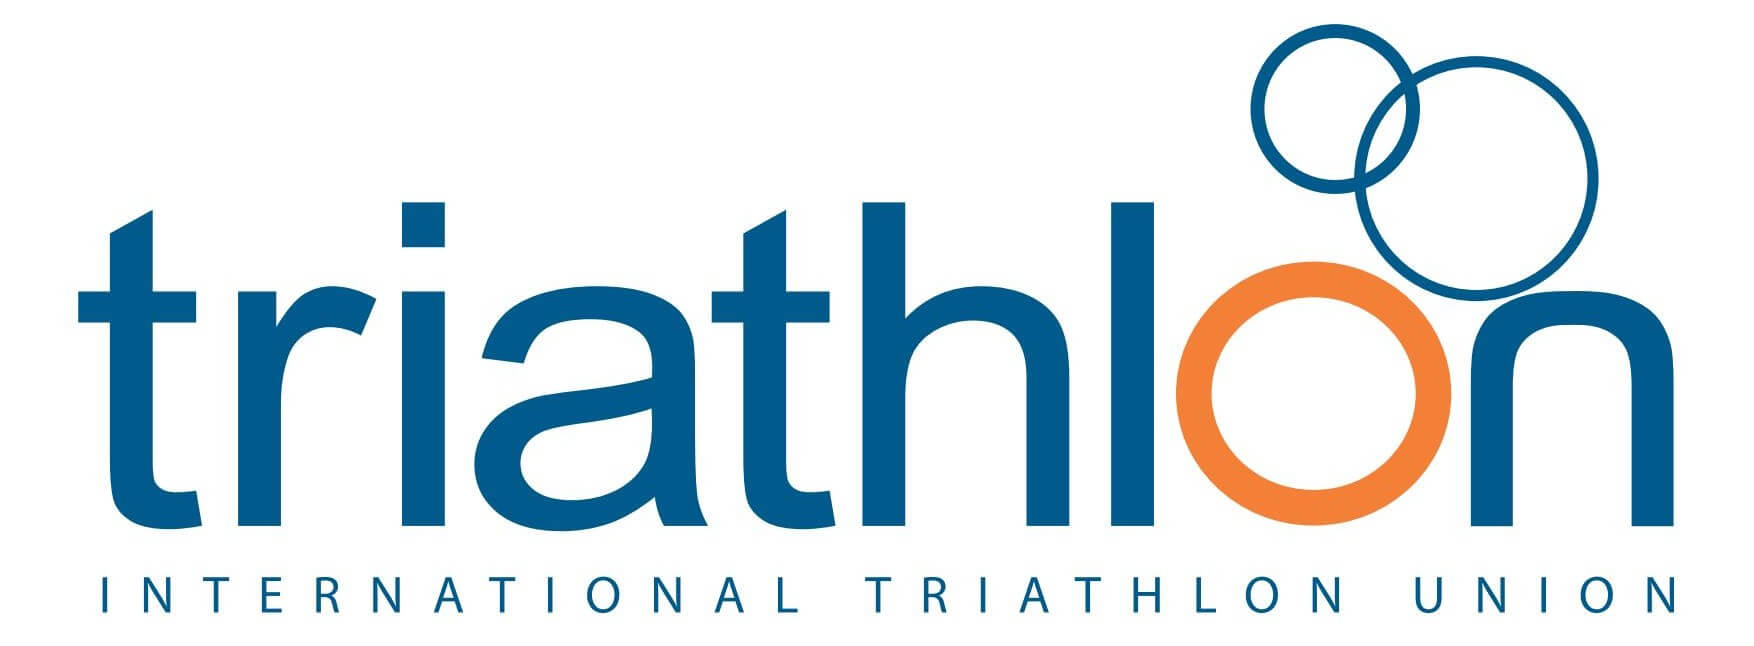 International Triathlon Union ITU logo